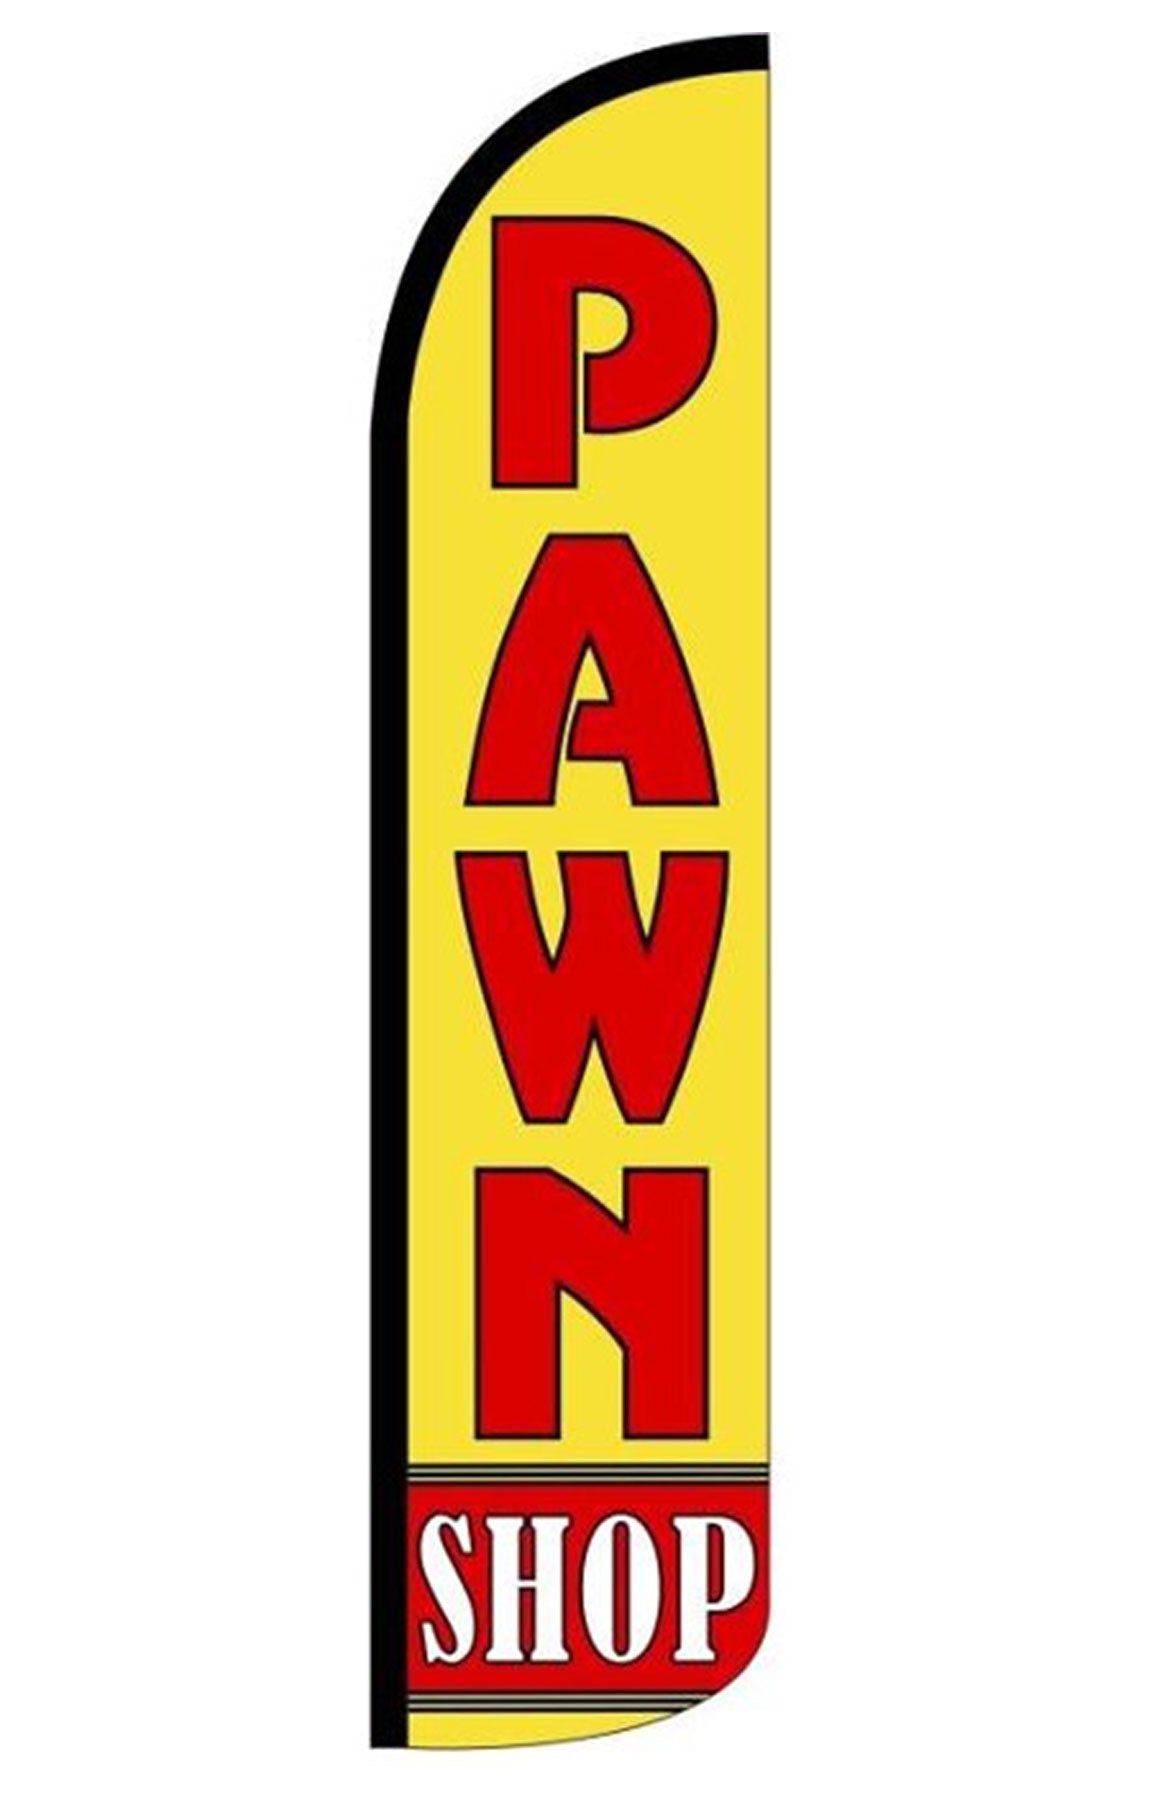 PAWN SHOP